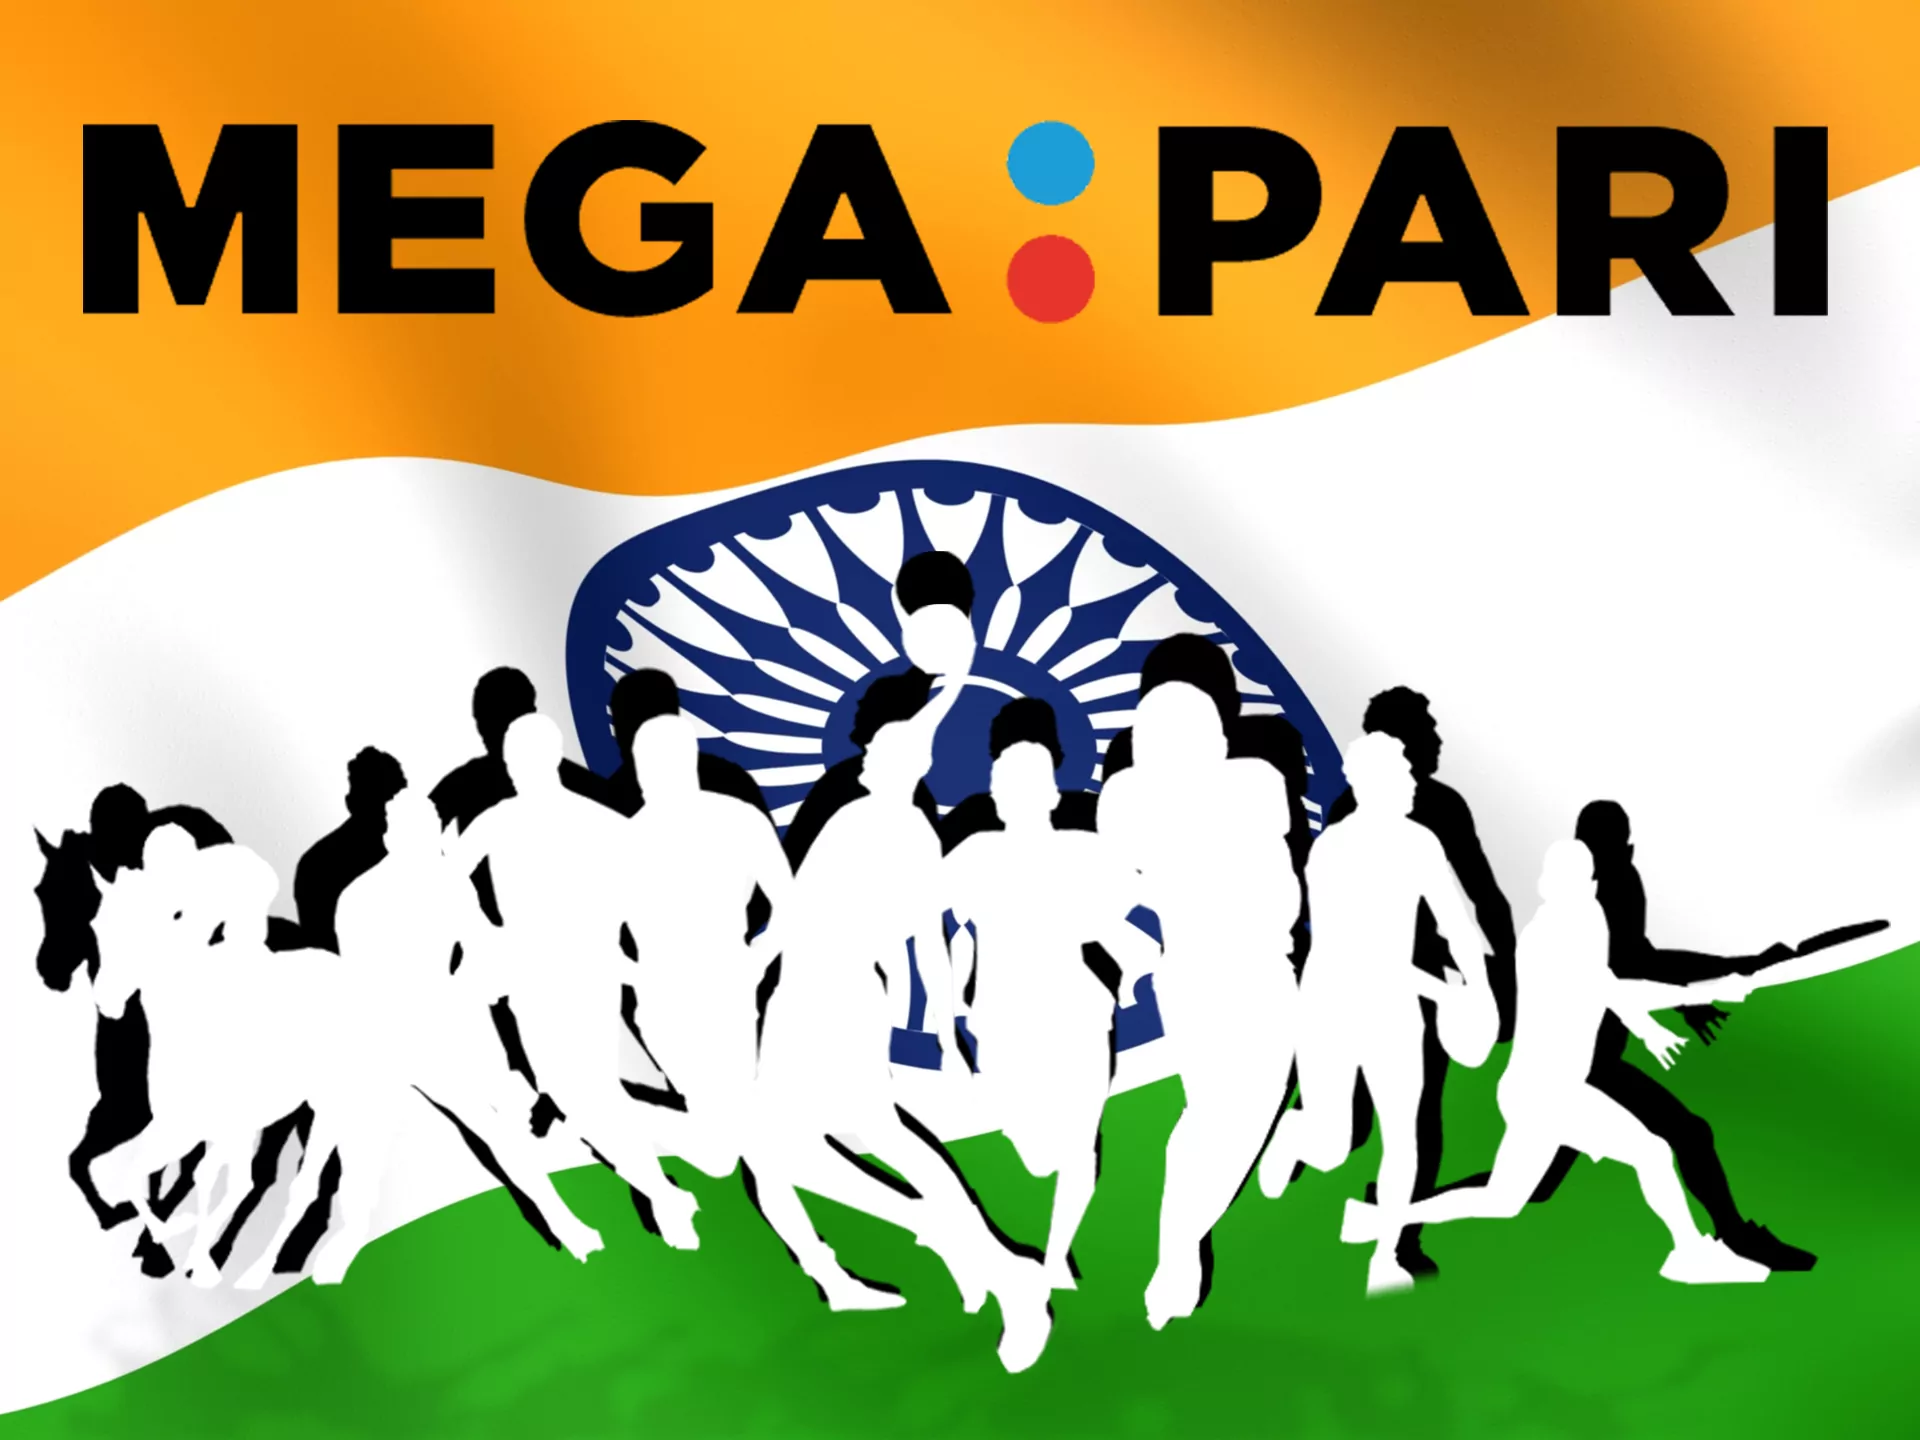 Megapari is best betting site in India.